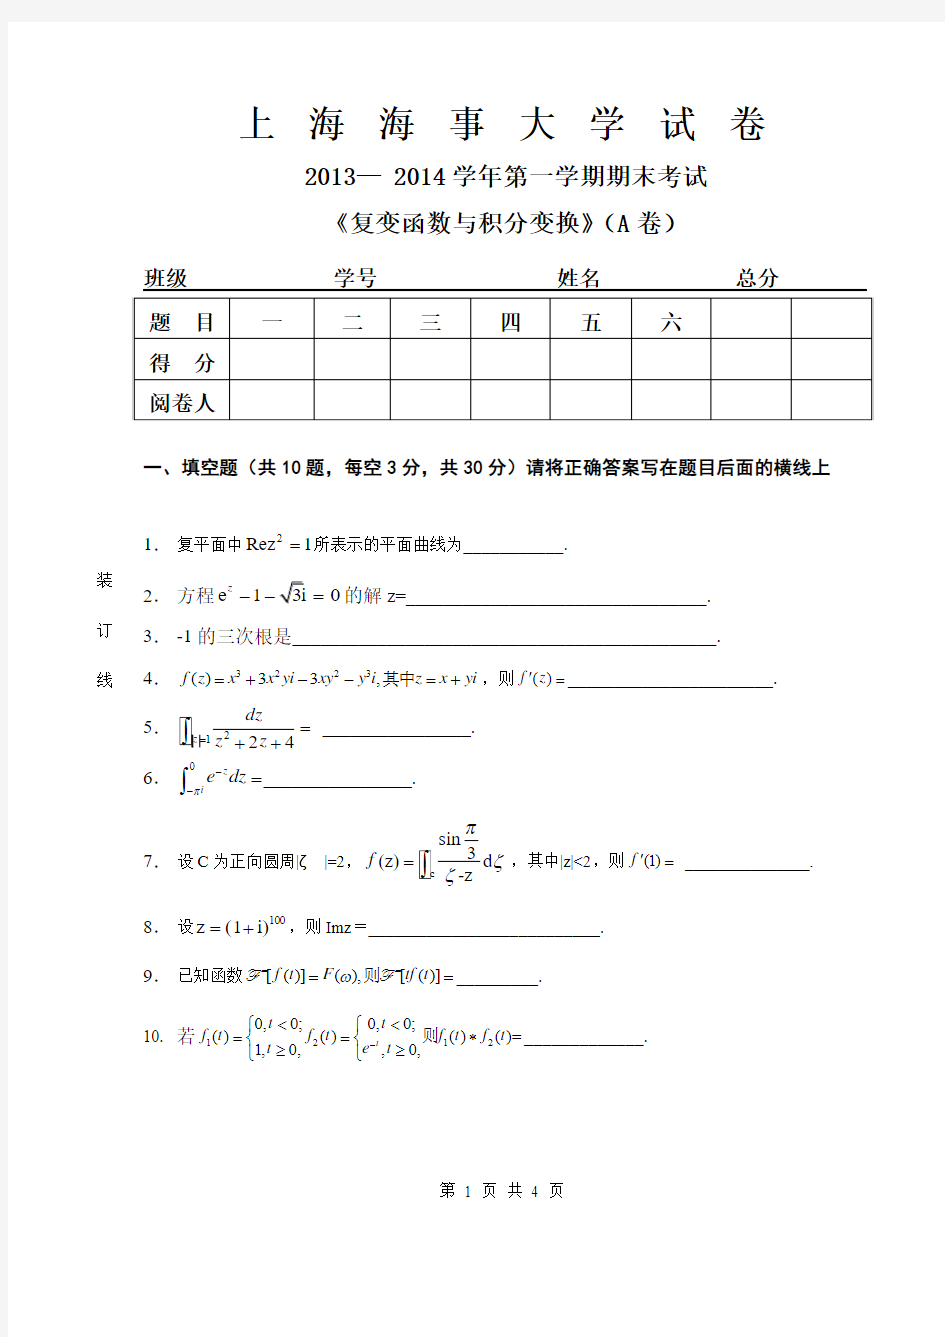 上海海事大学2013-2014复变函数与积分变换A卷